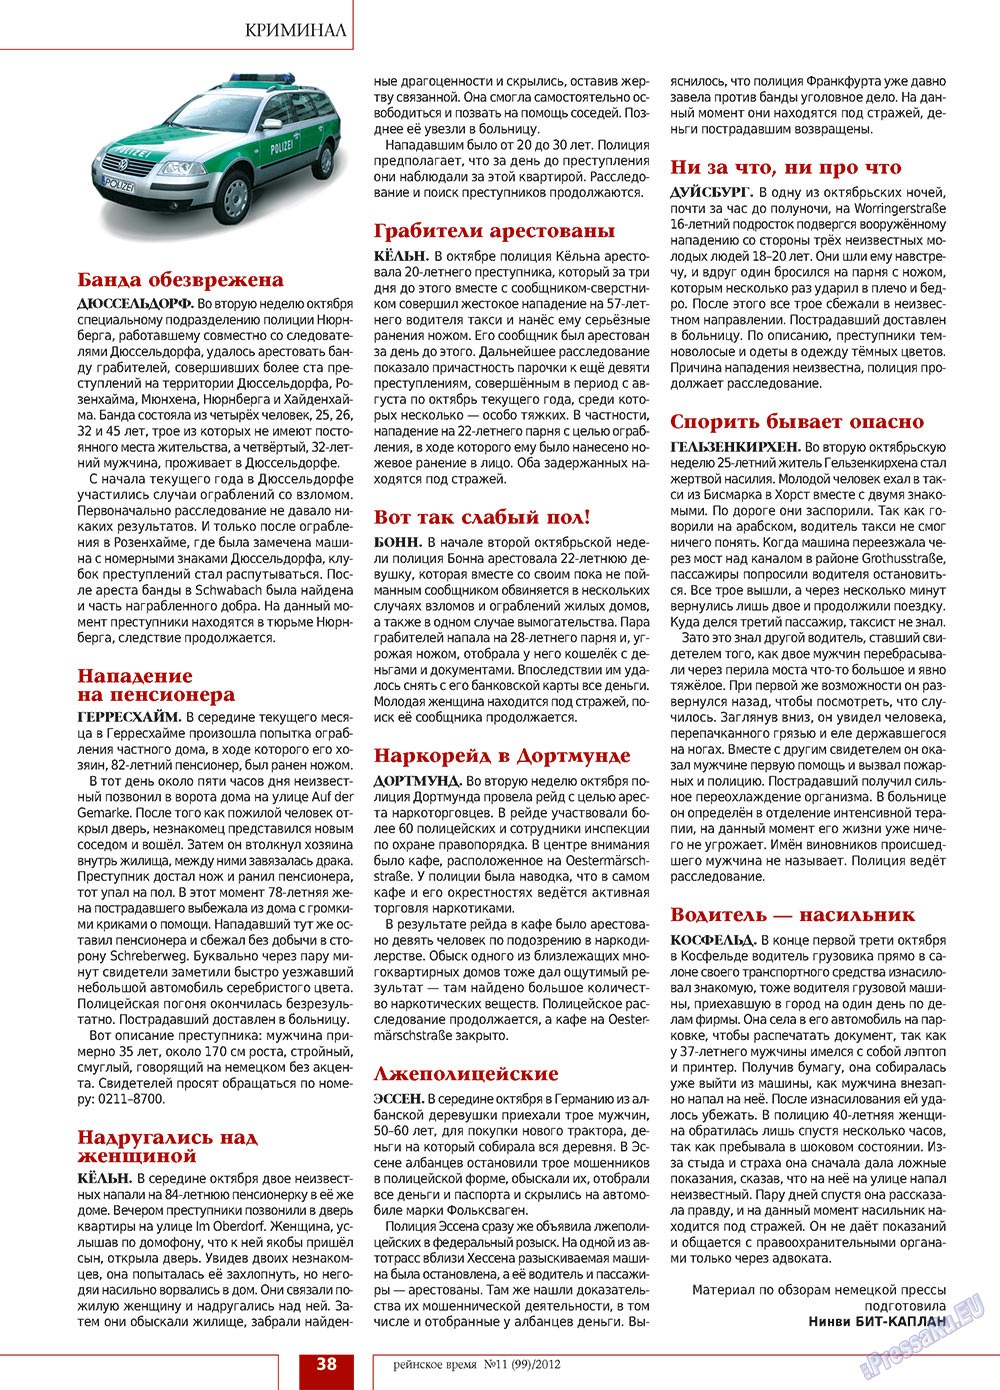 Рейнское время, журнал. 2012 №11 стр.38